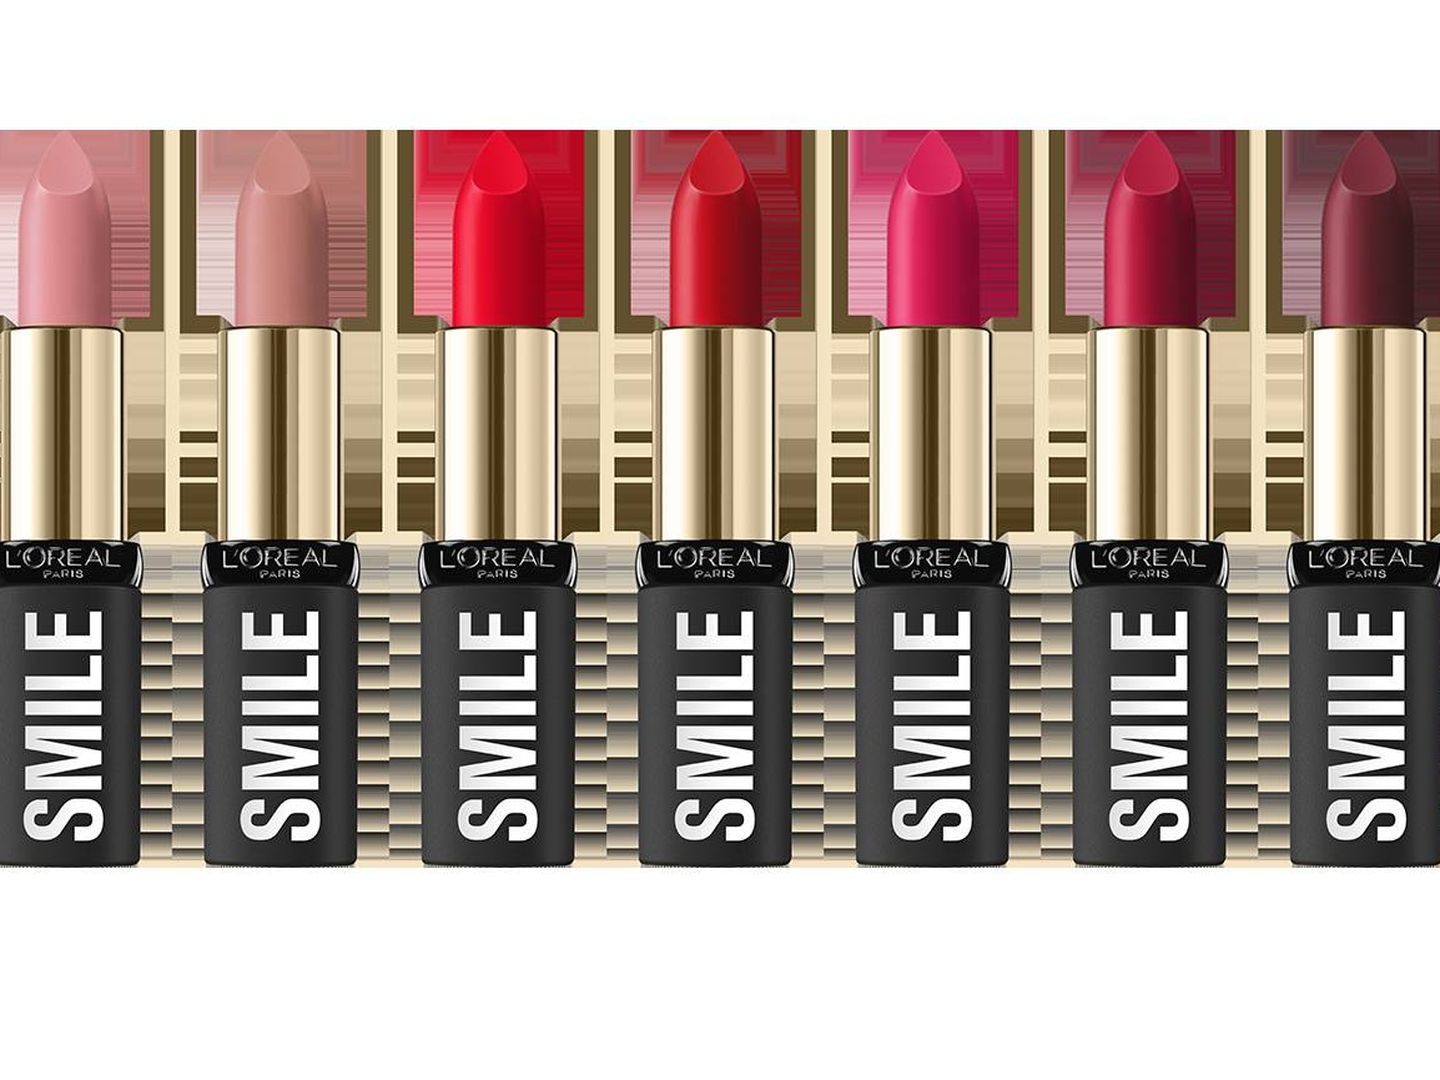 Ls barras de labios contemplan los 7 días de la semana. (Imagen: L'Oréal Paris)